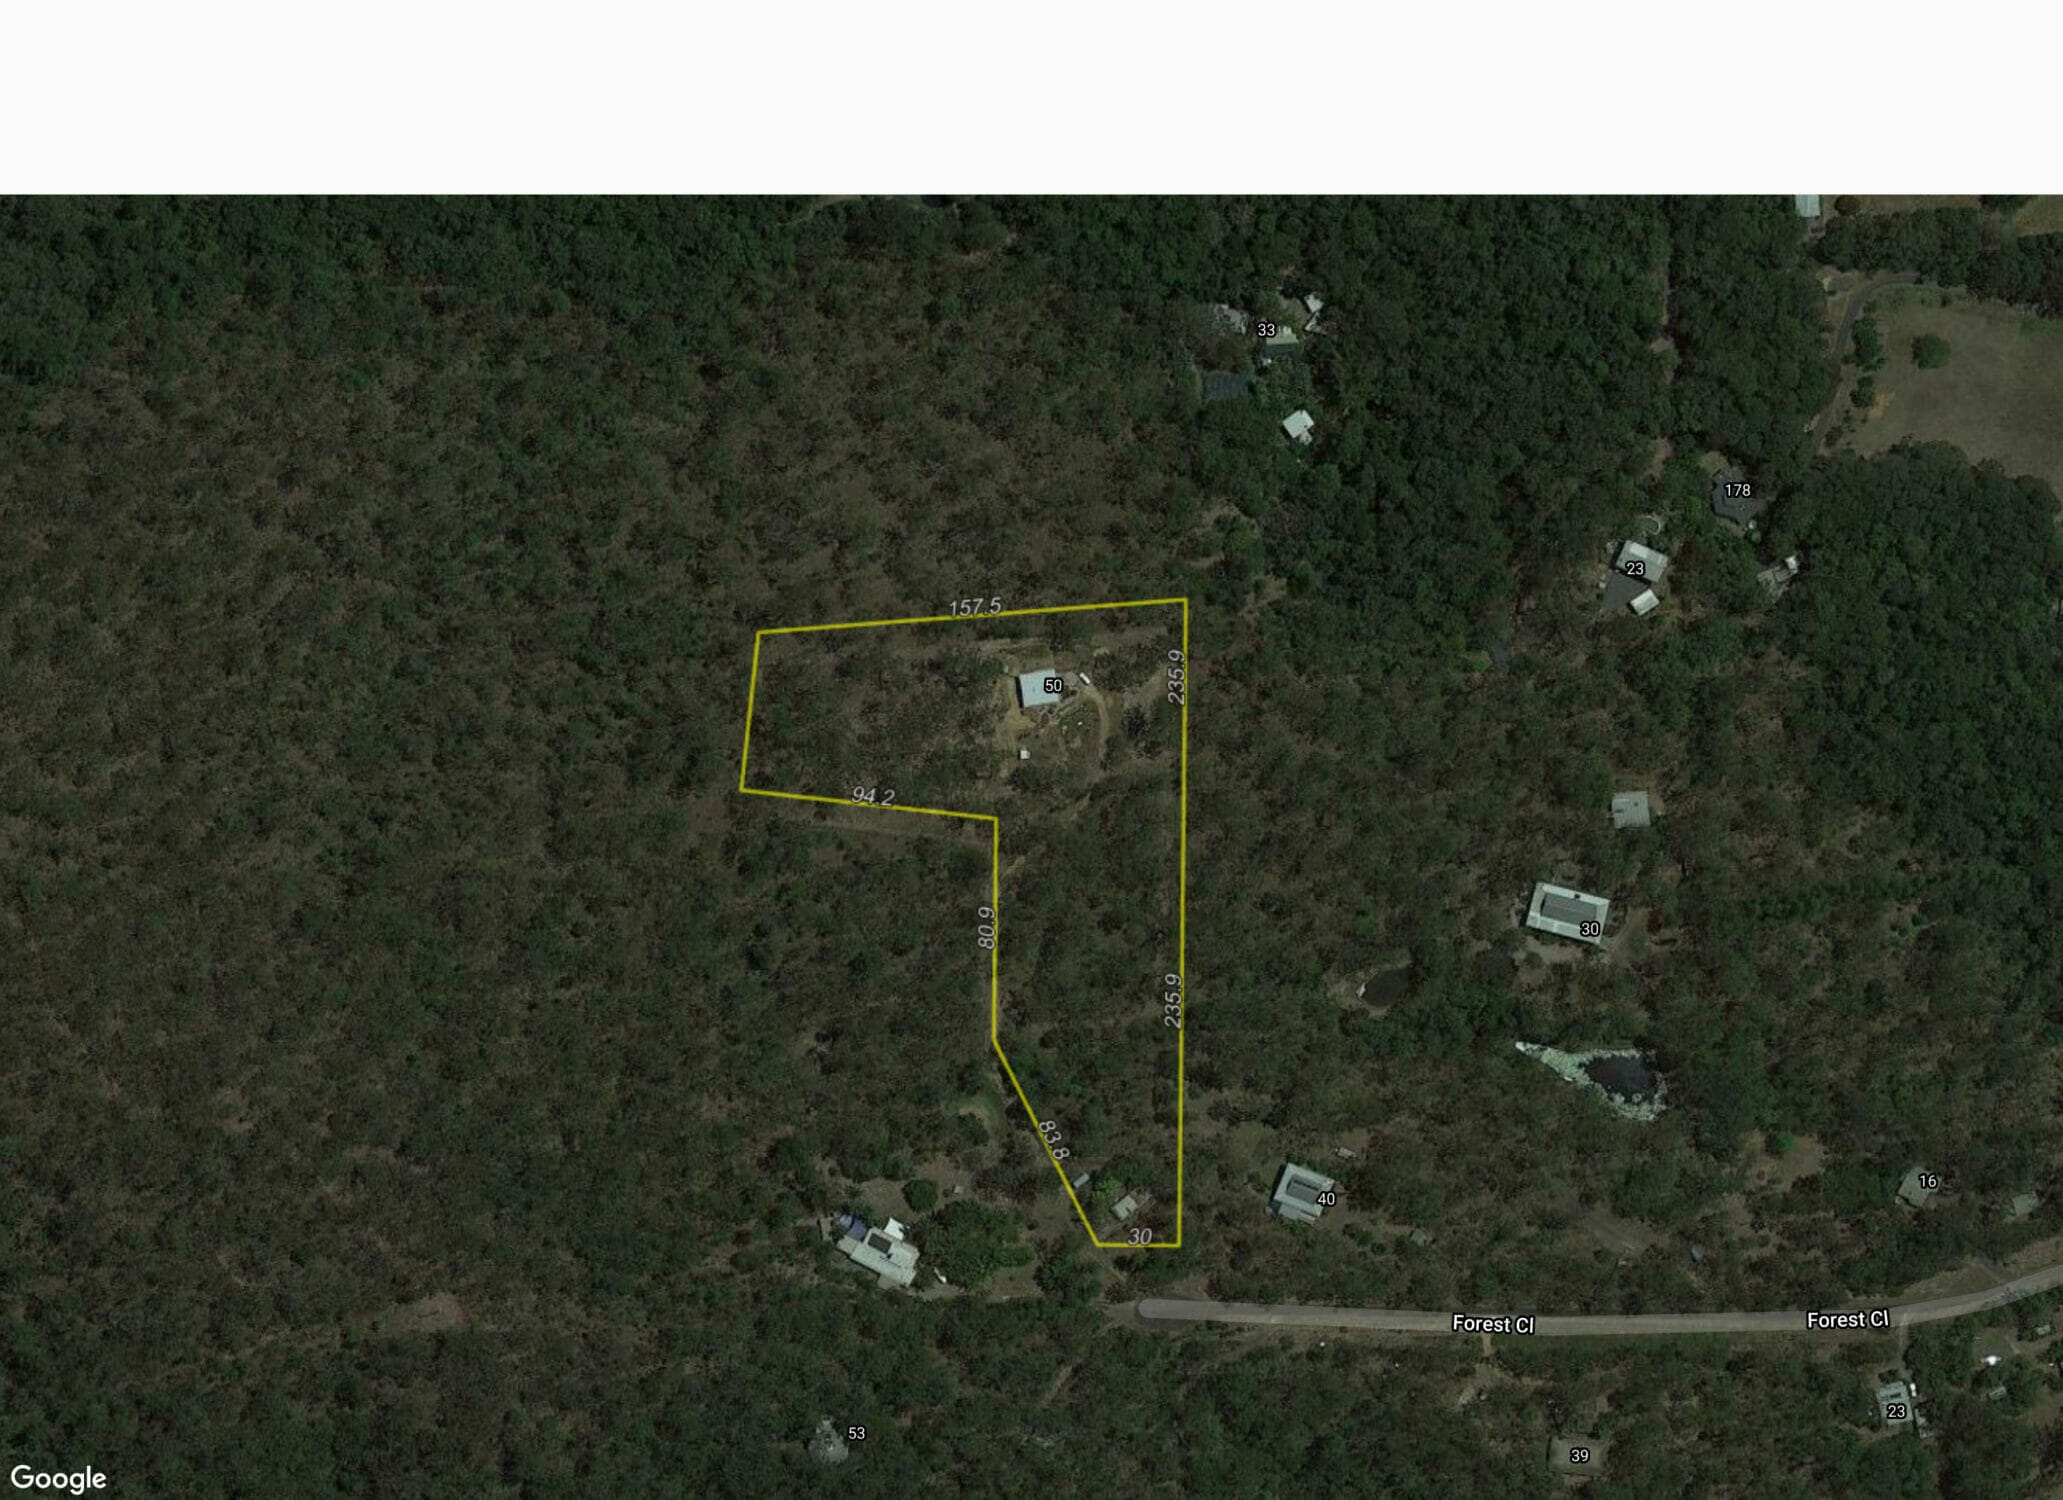 50 Forest Close, Speewah Map.jpg